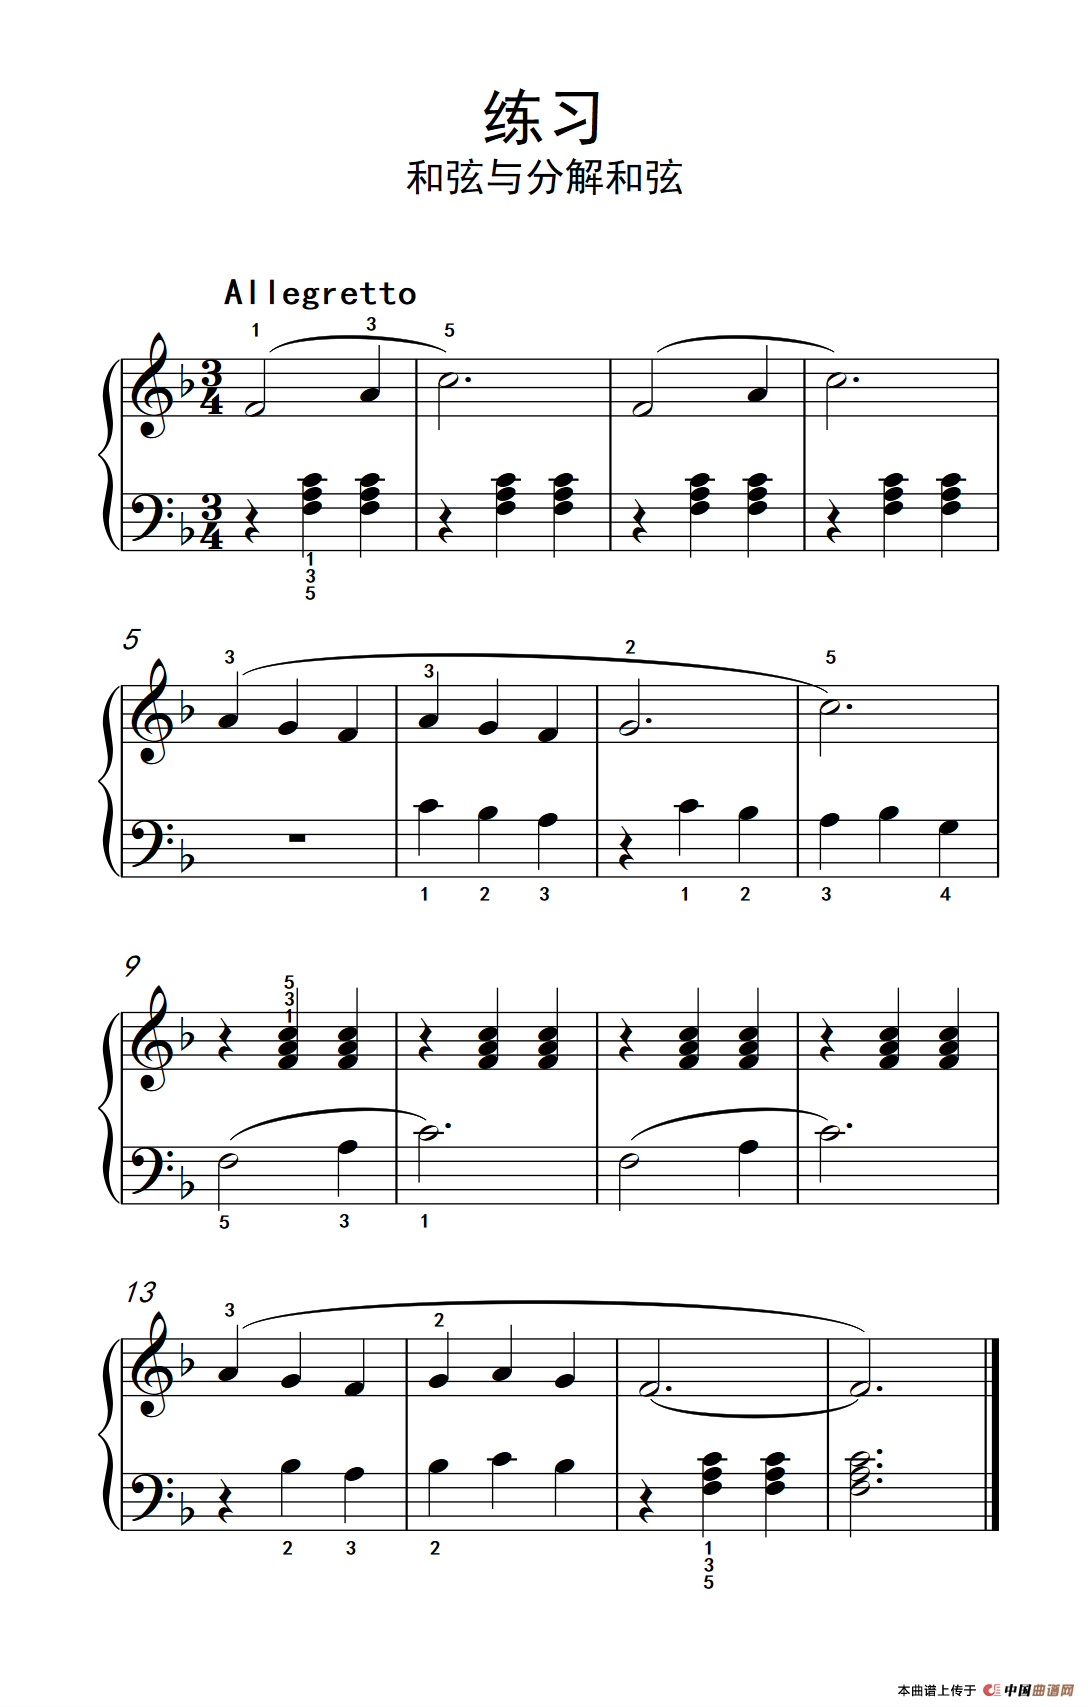 《练习 和弦与分解和弦》钢琴曲谱图分享